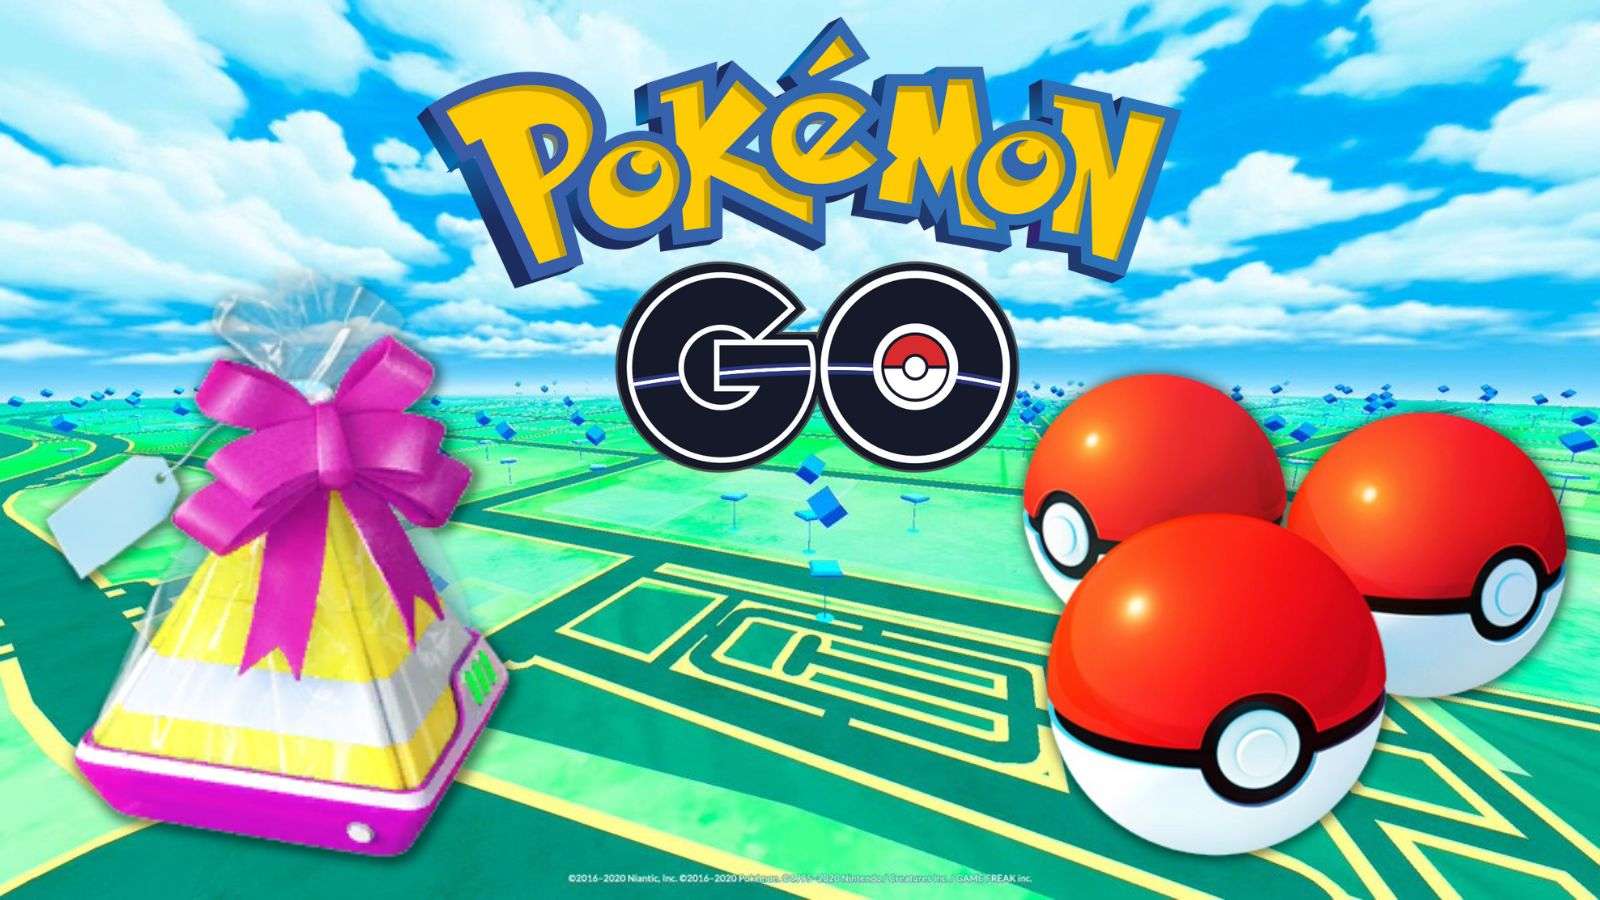 Lot de Poké Balls dans un cadeau Pokémon Go